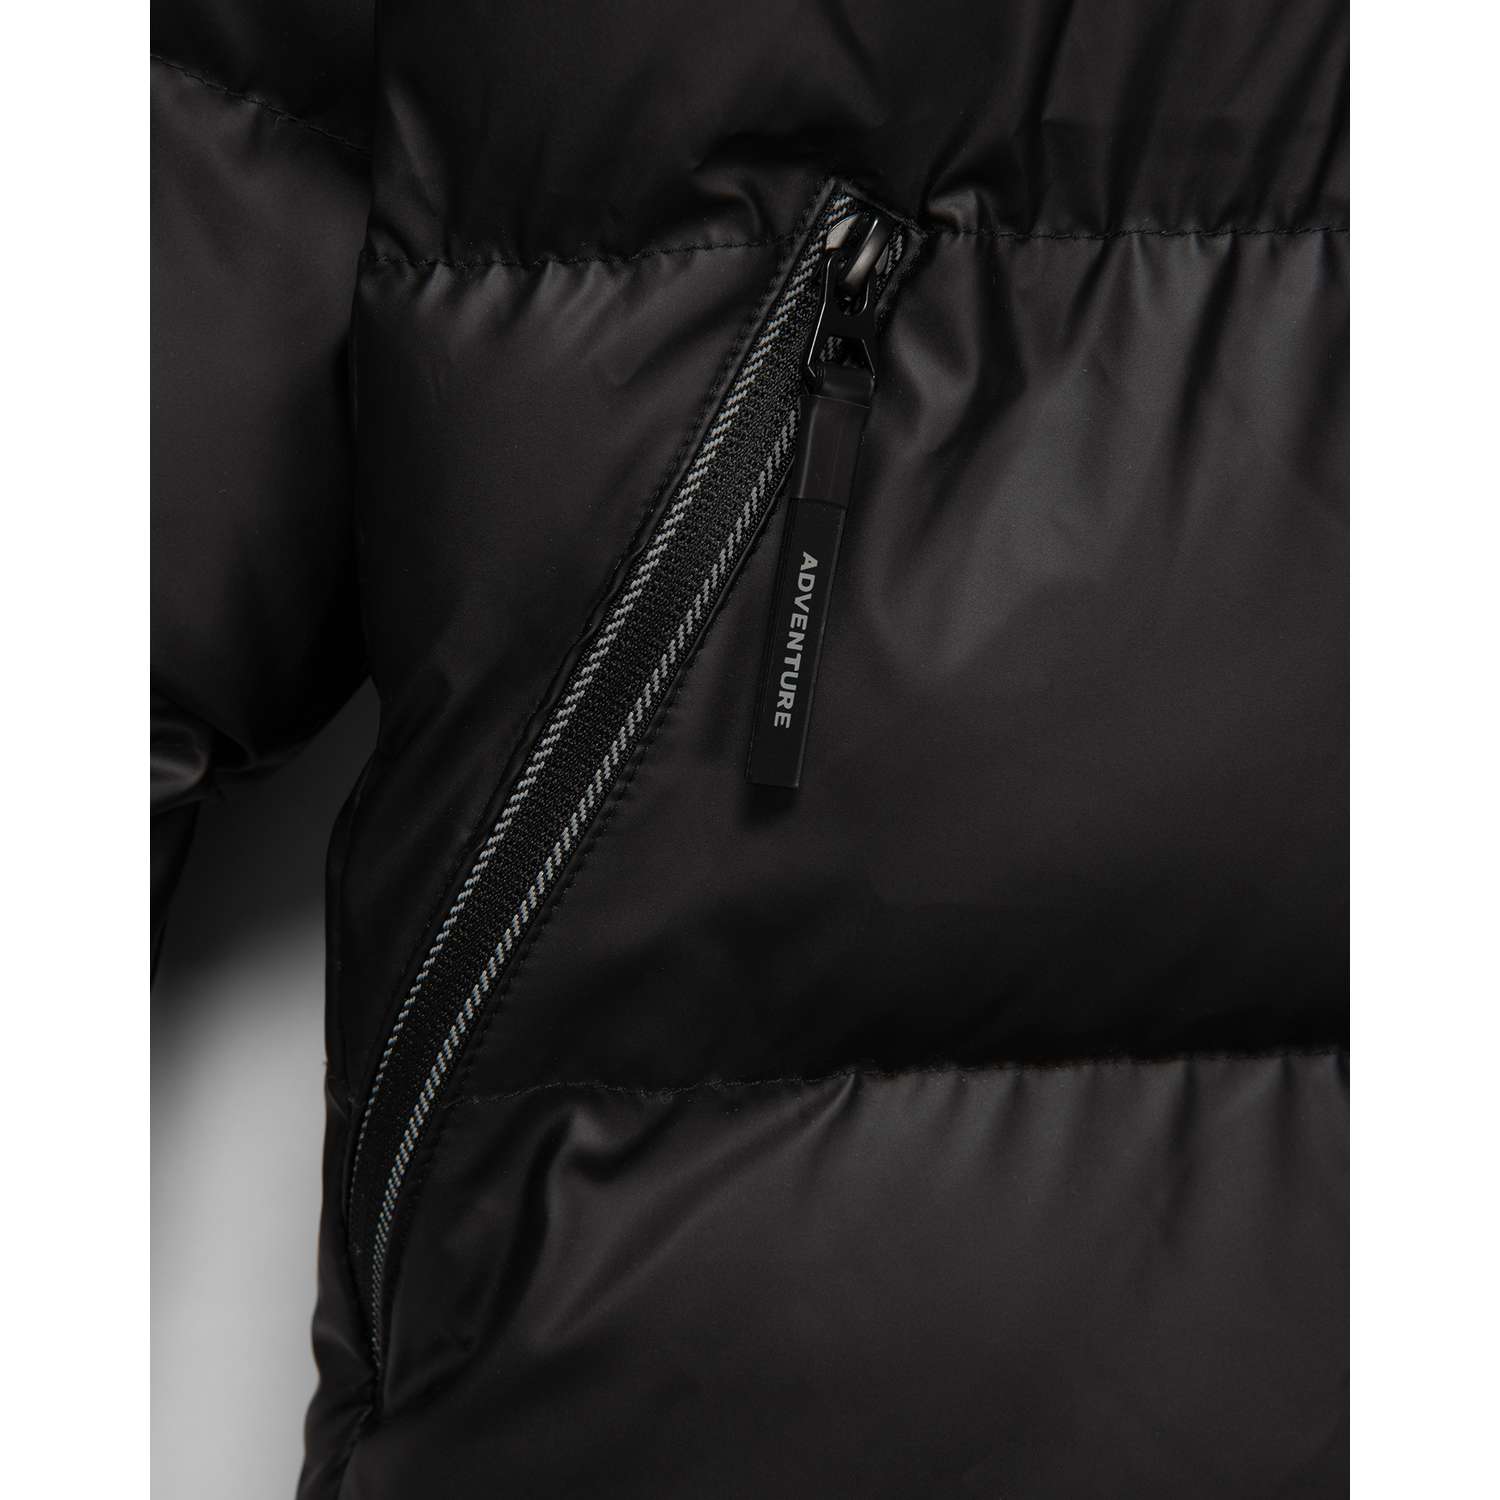 Куртка Futurino Cool W23FC5-B150kb-99 - фото 6